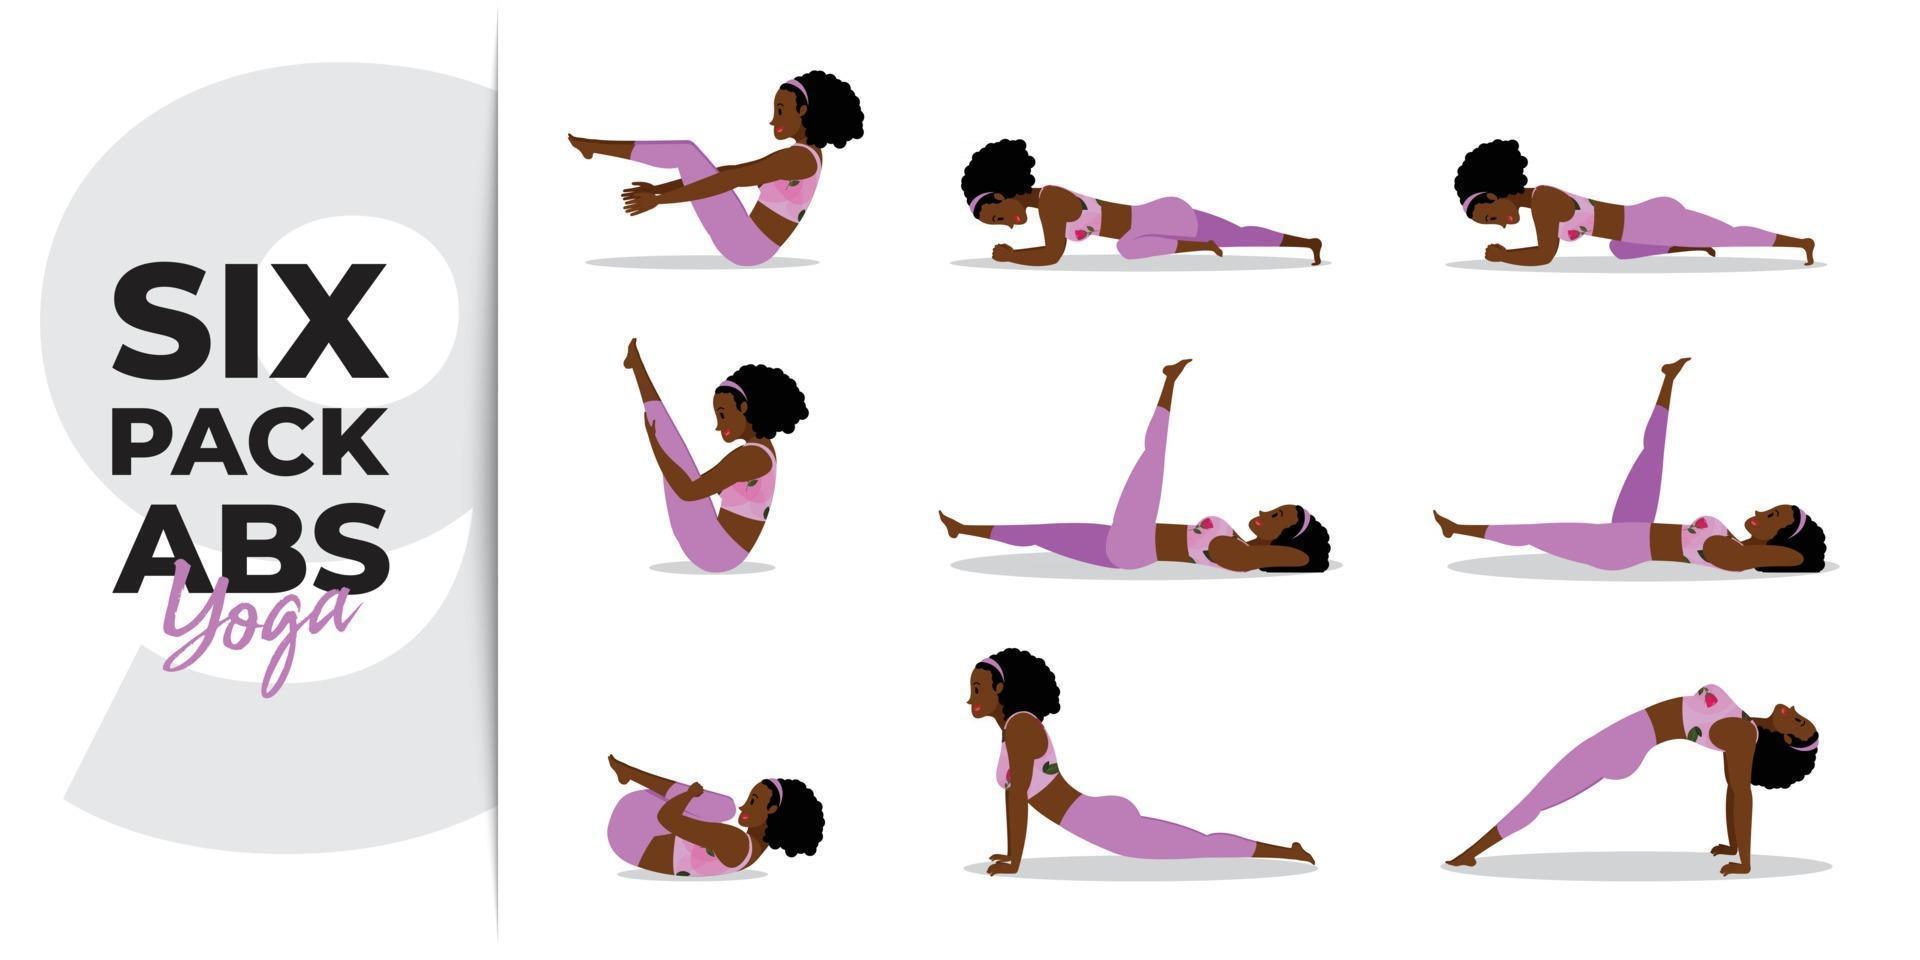 dame noire pratiquant le yoga asana pour six pack abs, ensemble de yoga asana pour six pack abs vecteur